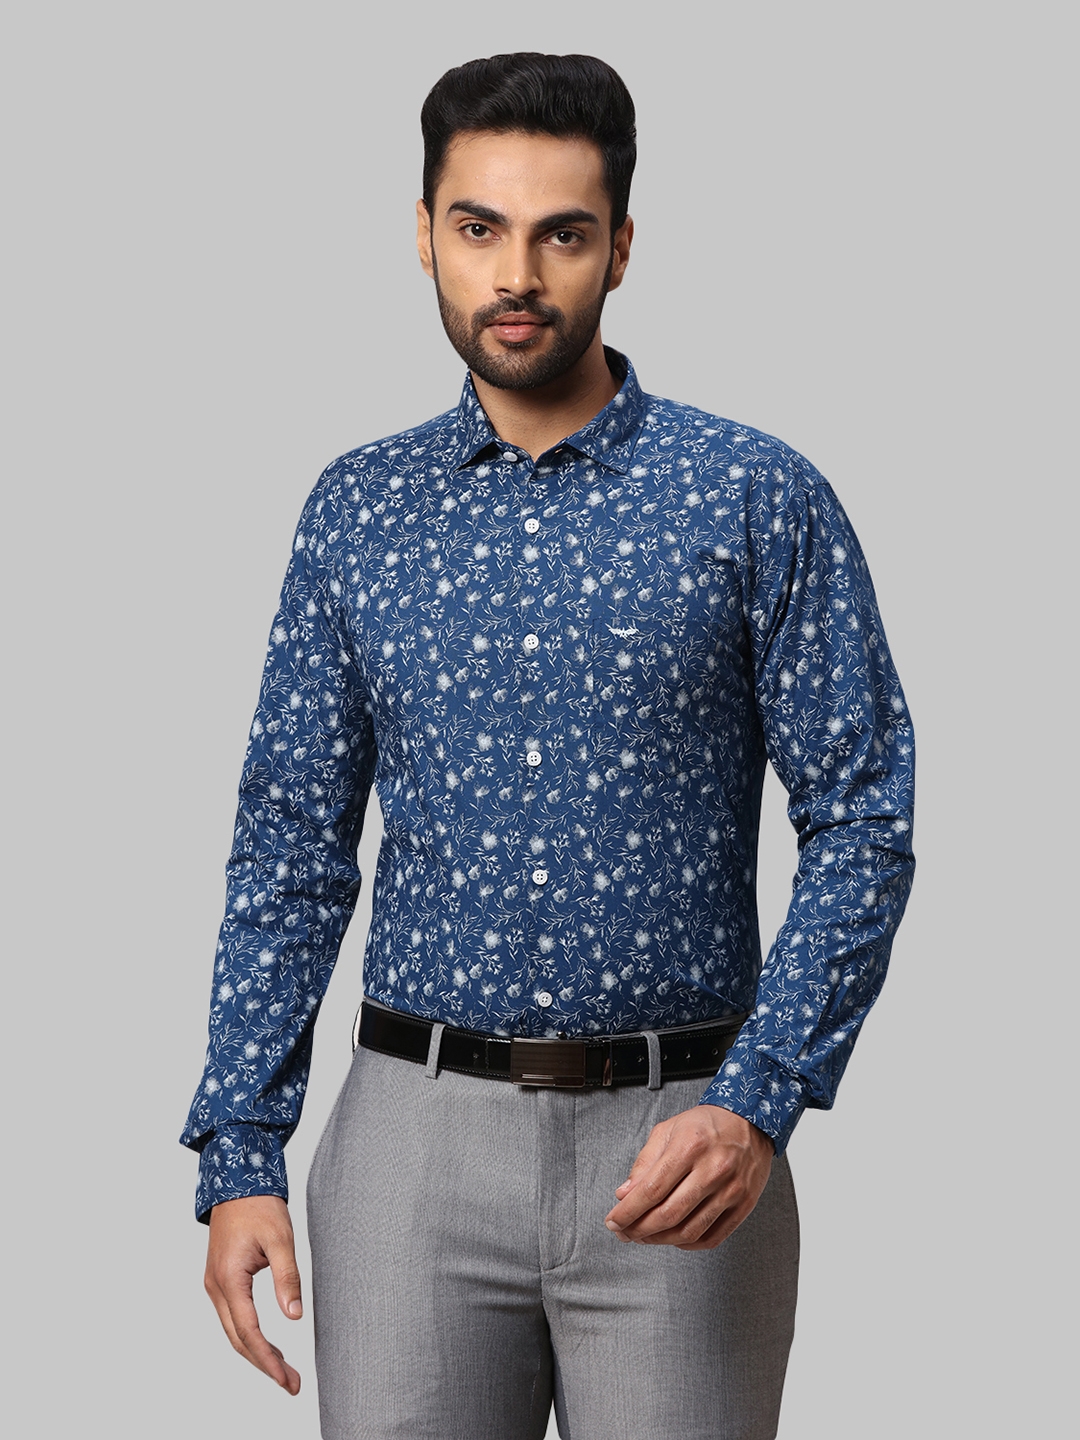 VAN HEUSEN Men Printed Casual Dark Blue Shirt  Buy VAN HEUSEN Men Printed  Casual Dark Blue Shirt Online at Best Prices in India  Flipkartcom